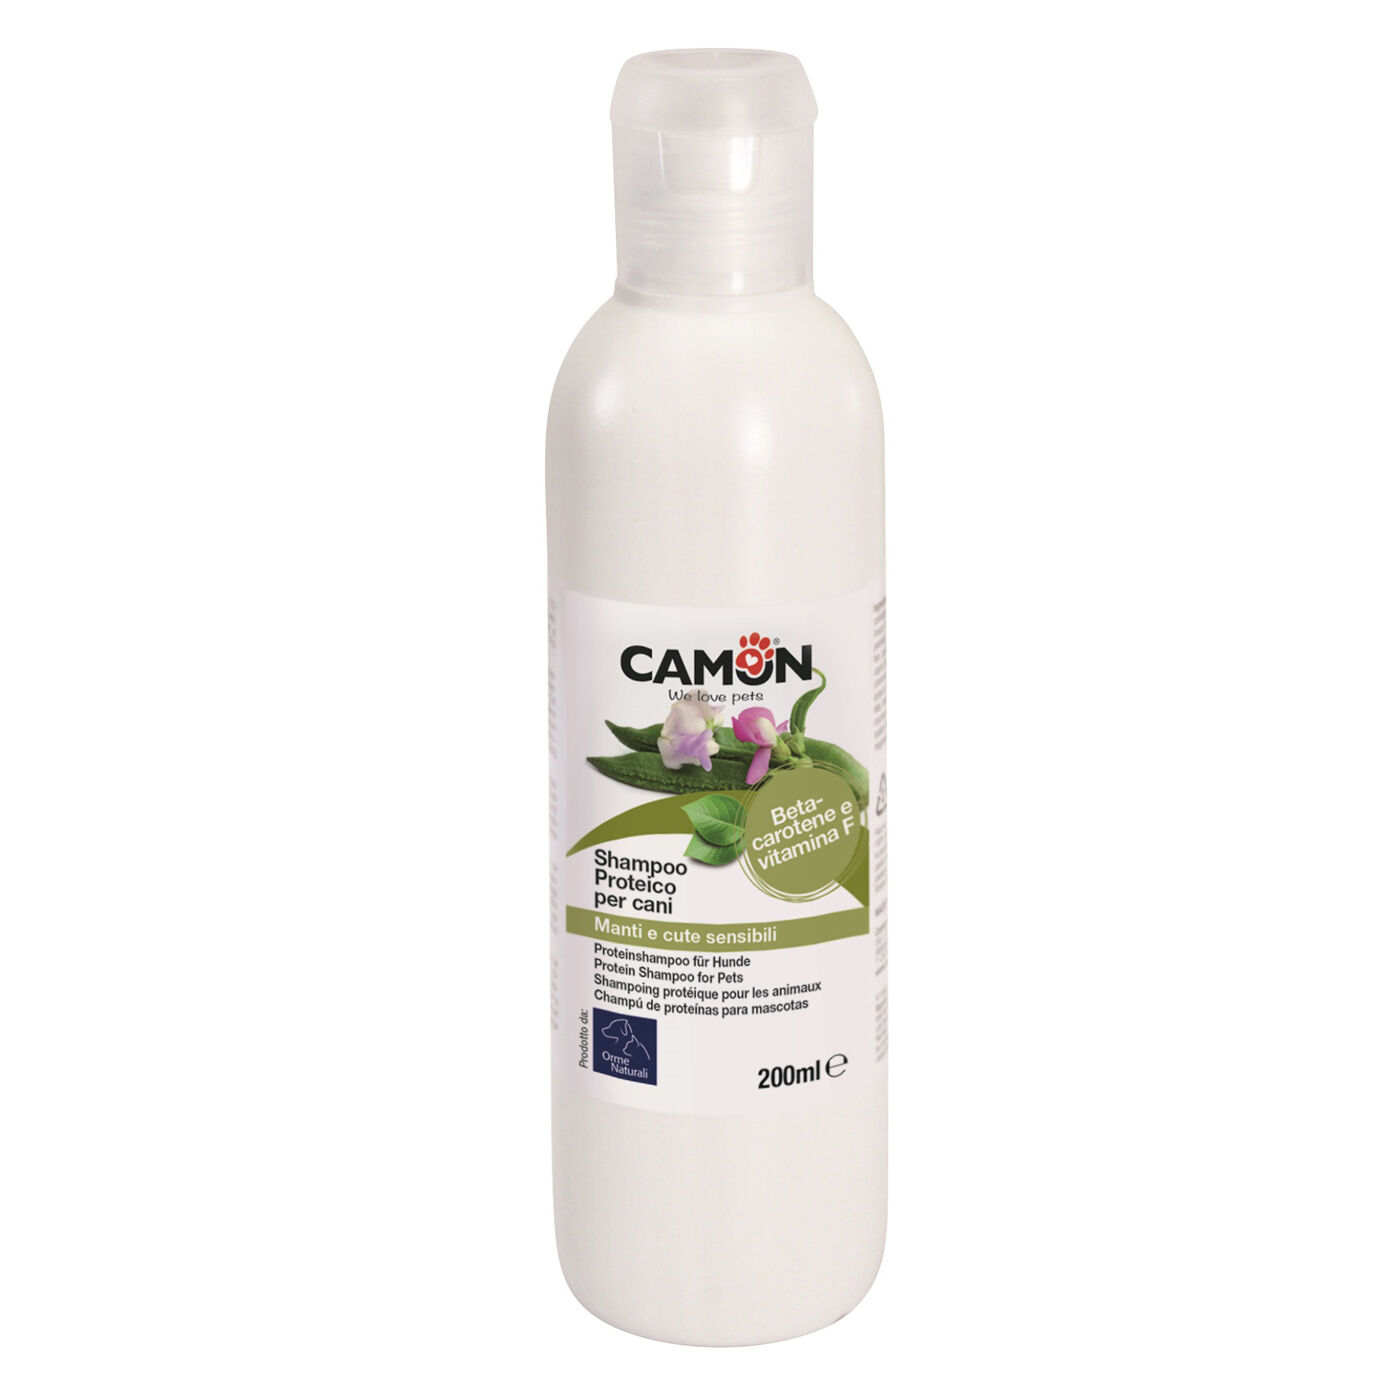 Camon-shampoo-protein-fuer-hunde-online-kaufen-CO-G802